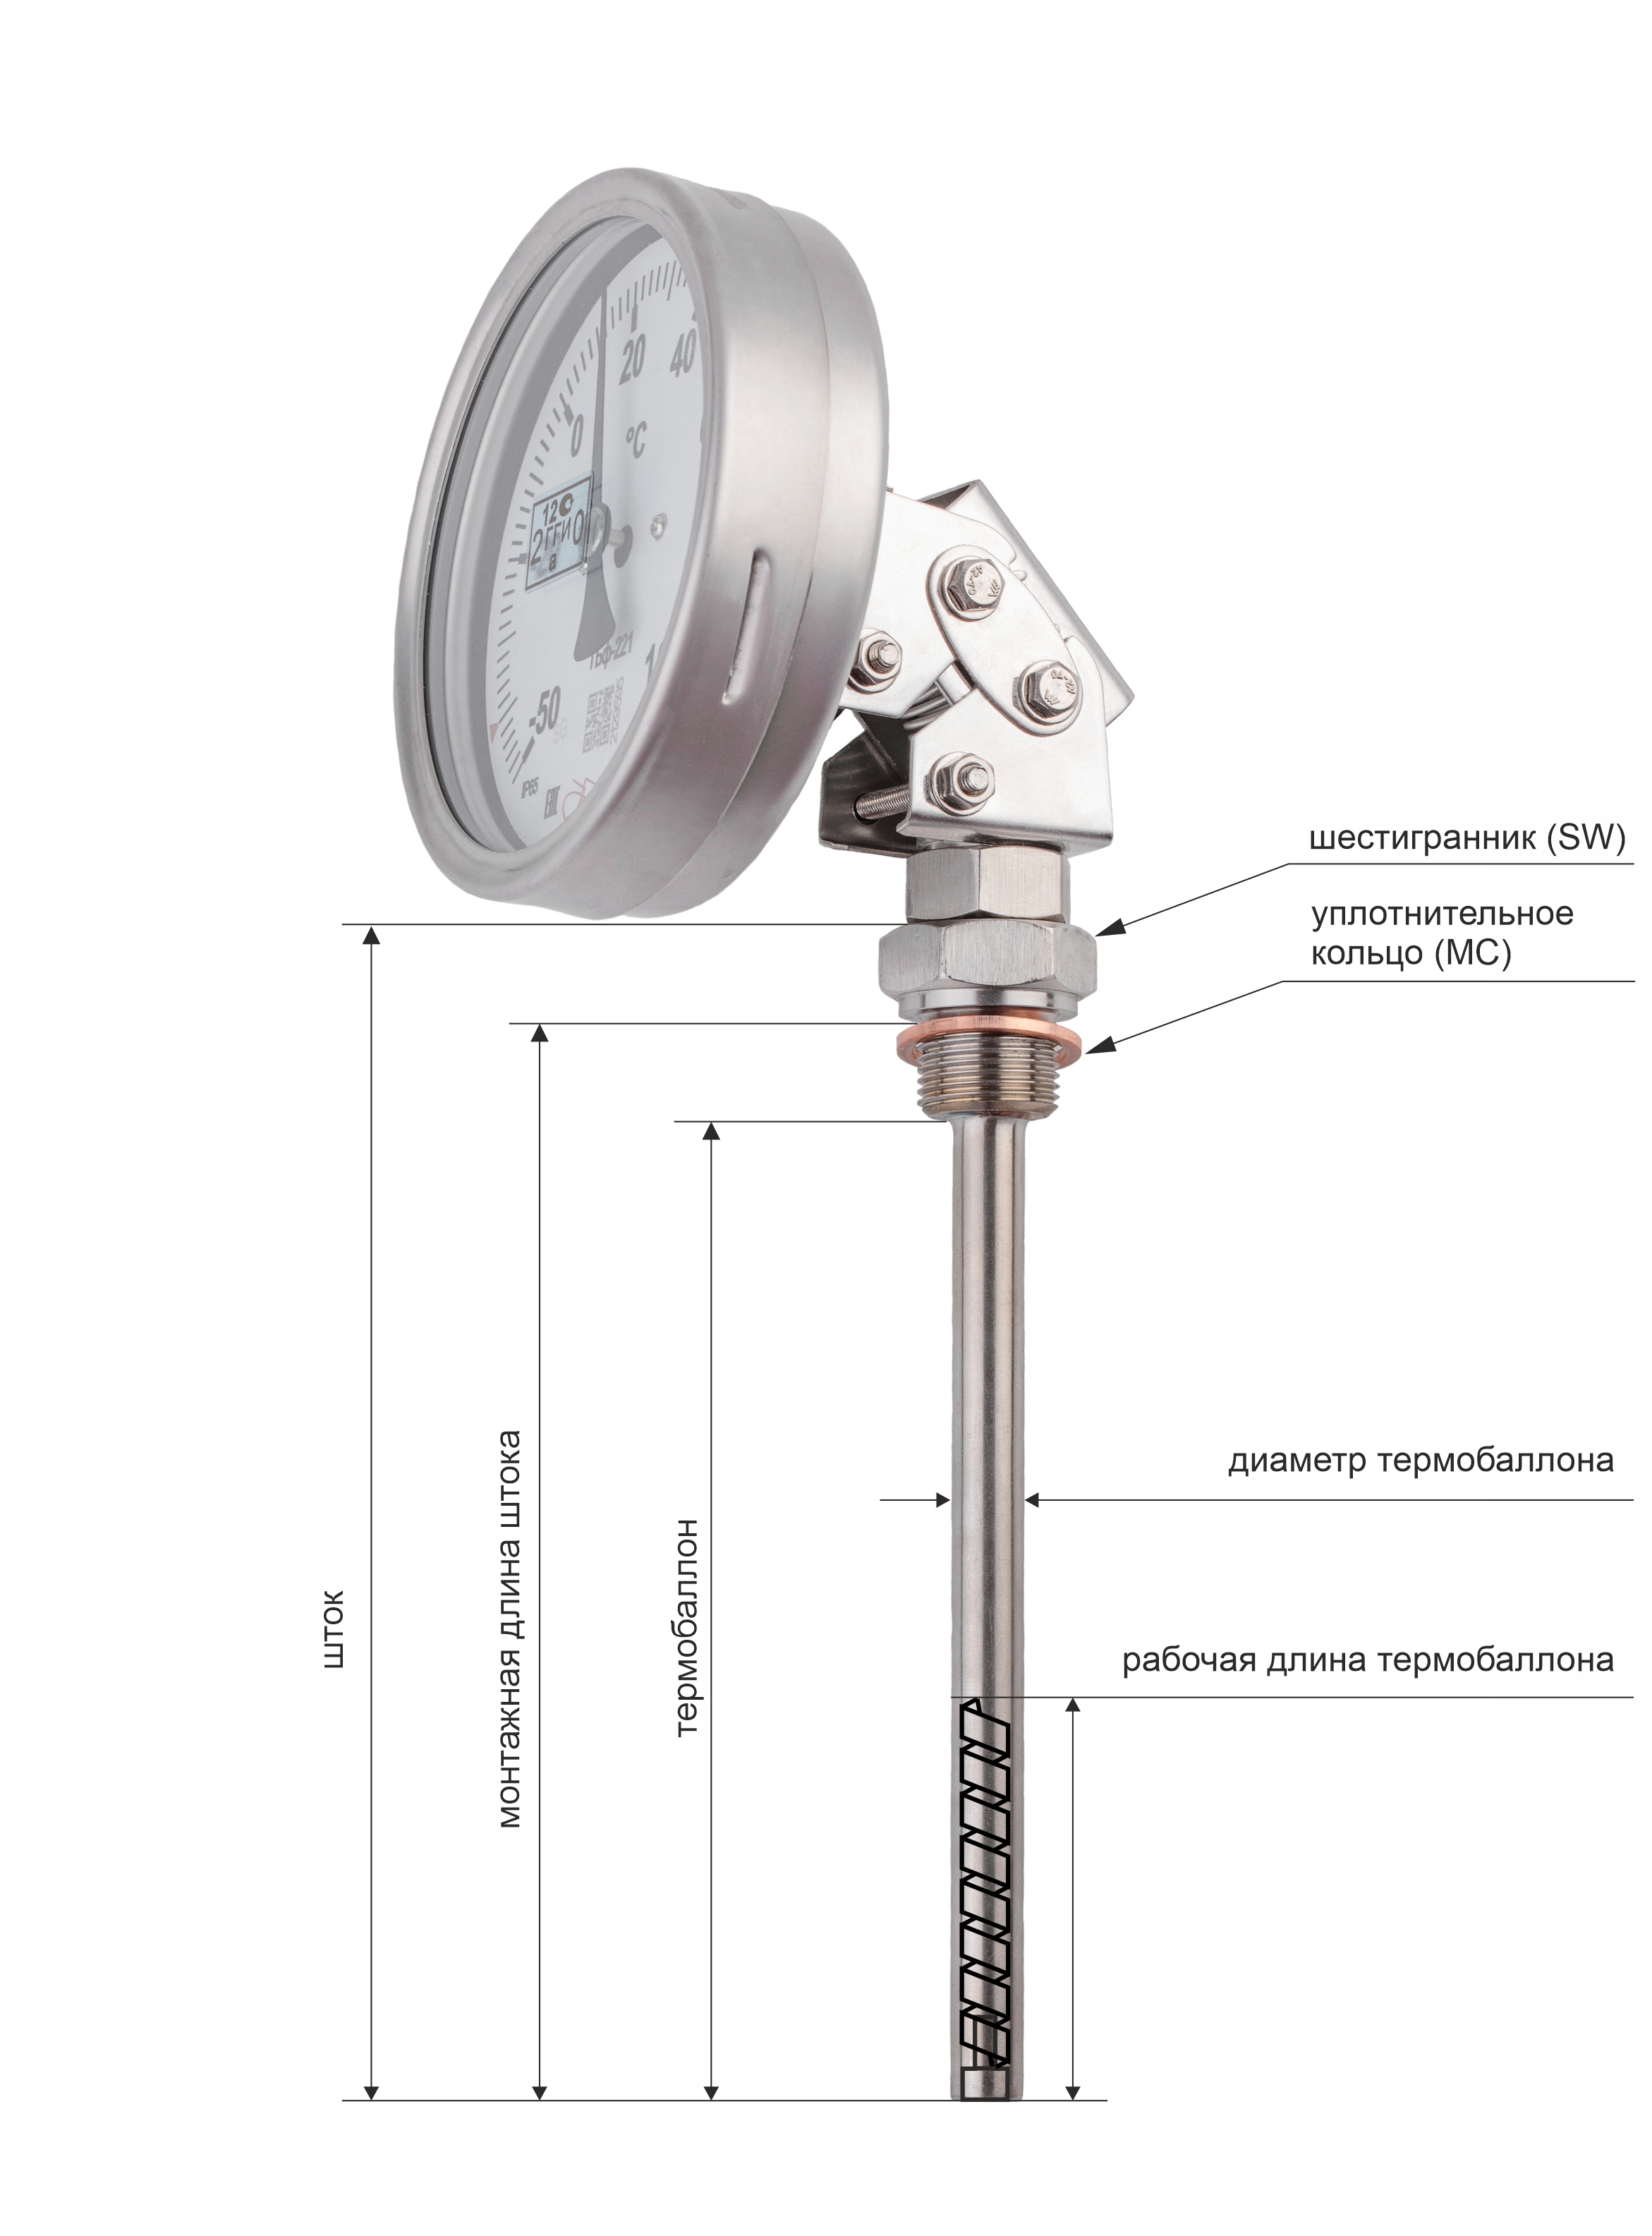 Термометры биметаллические коррозионностойкие ТБф-226 IP65 с возможностью гидрозаполнения (Диаметр: 100 мм, 160 мм)